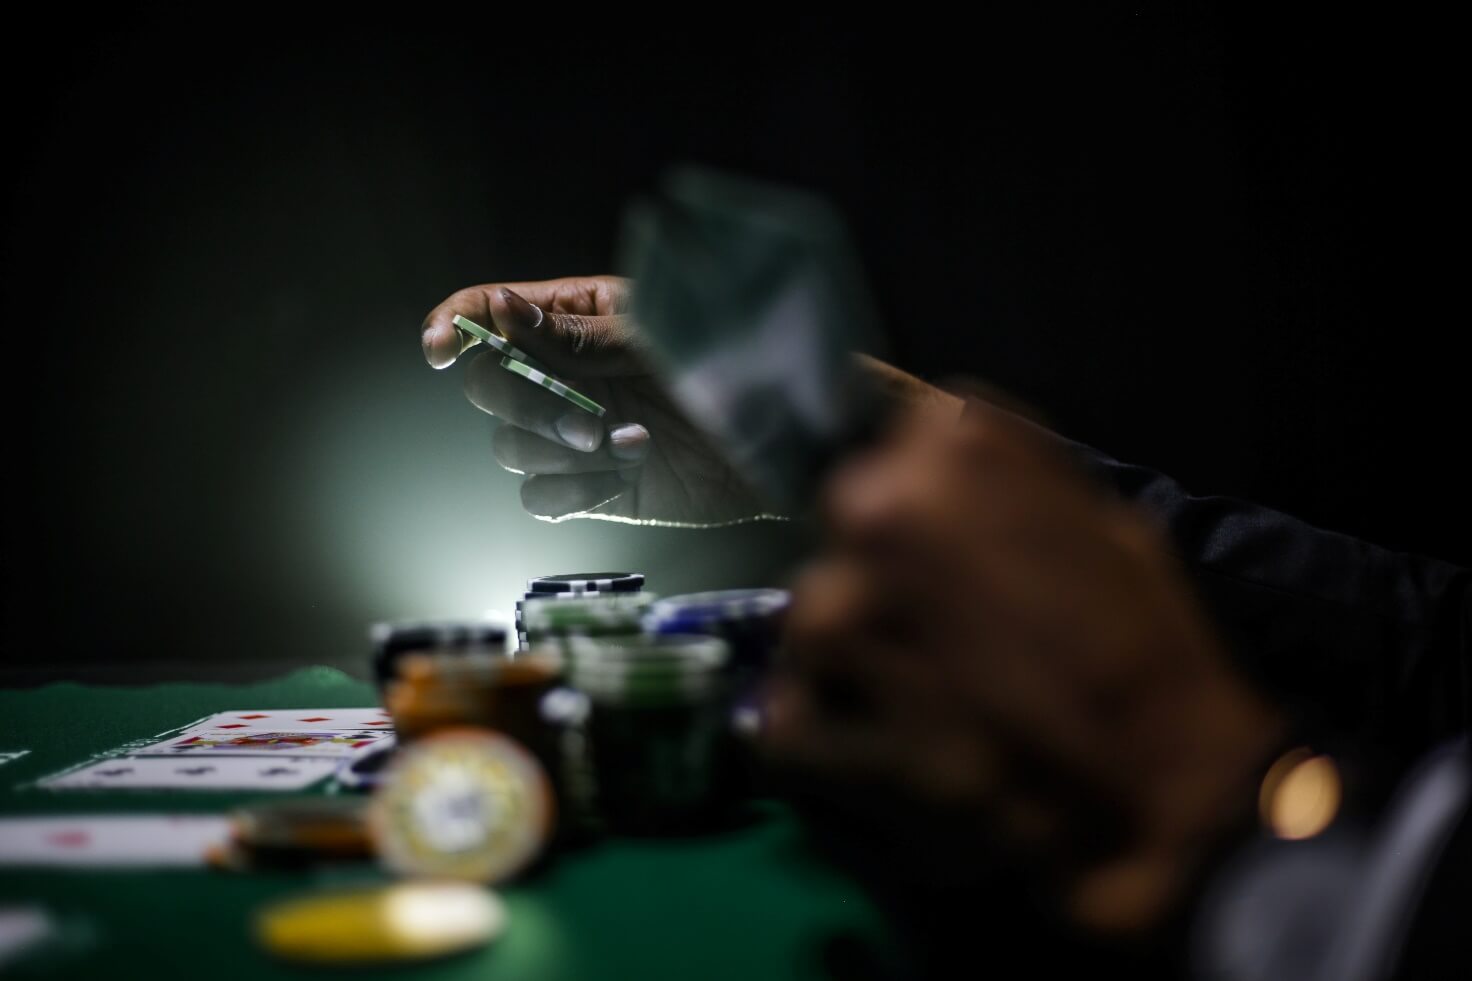 Le differenze tra esperti e principianti nel Poker Online